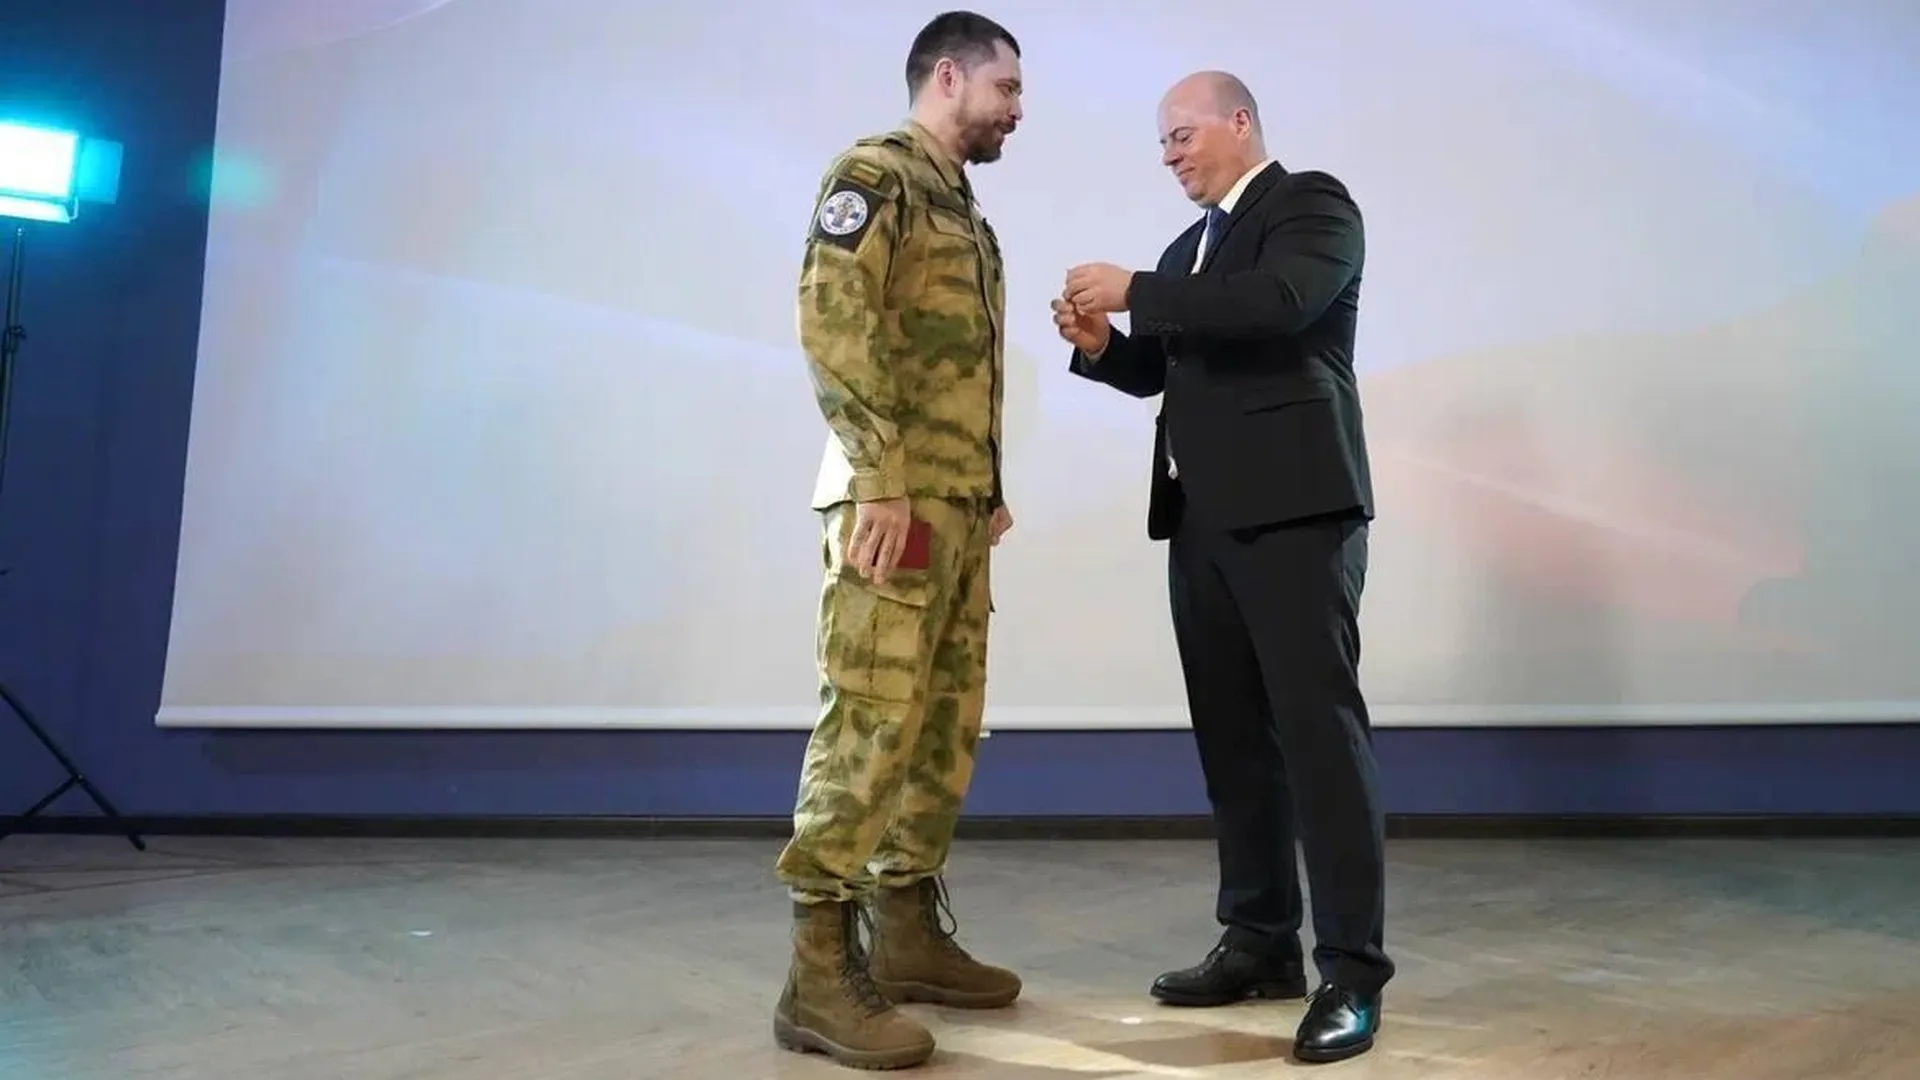 В школе г.о. Котельники торжественно наградили военнослужащего за храбрость на СВО